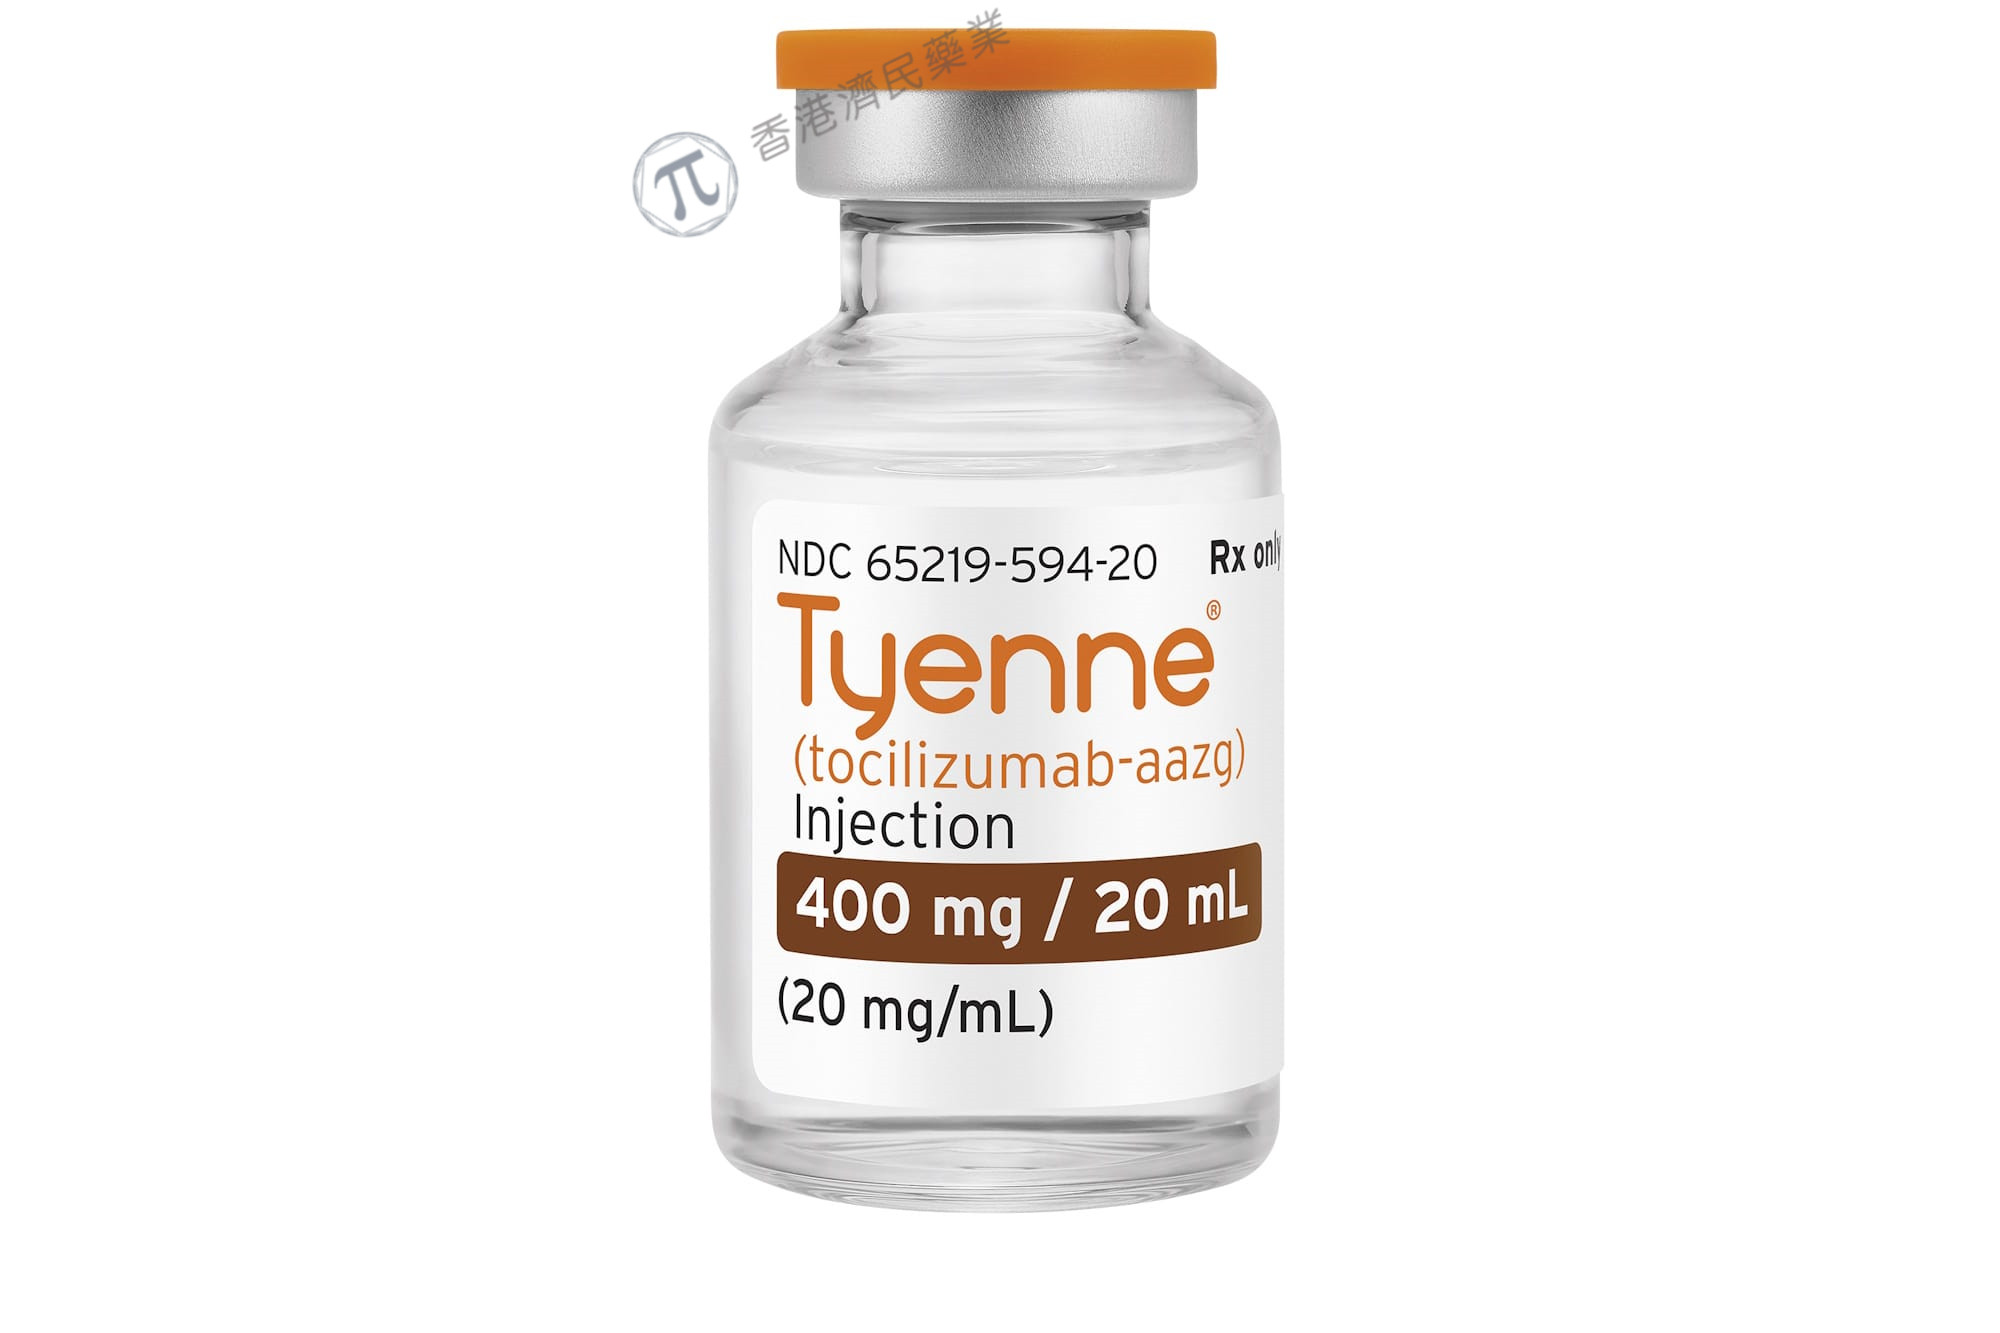 首款静脉和皮下给药的tocilizumab生物仿制药，FDA批准Tyenne_香港济民药业